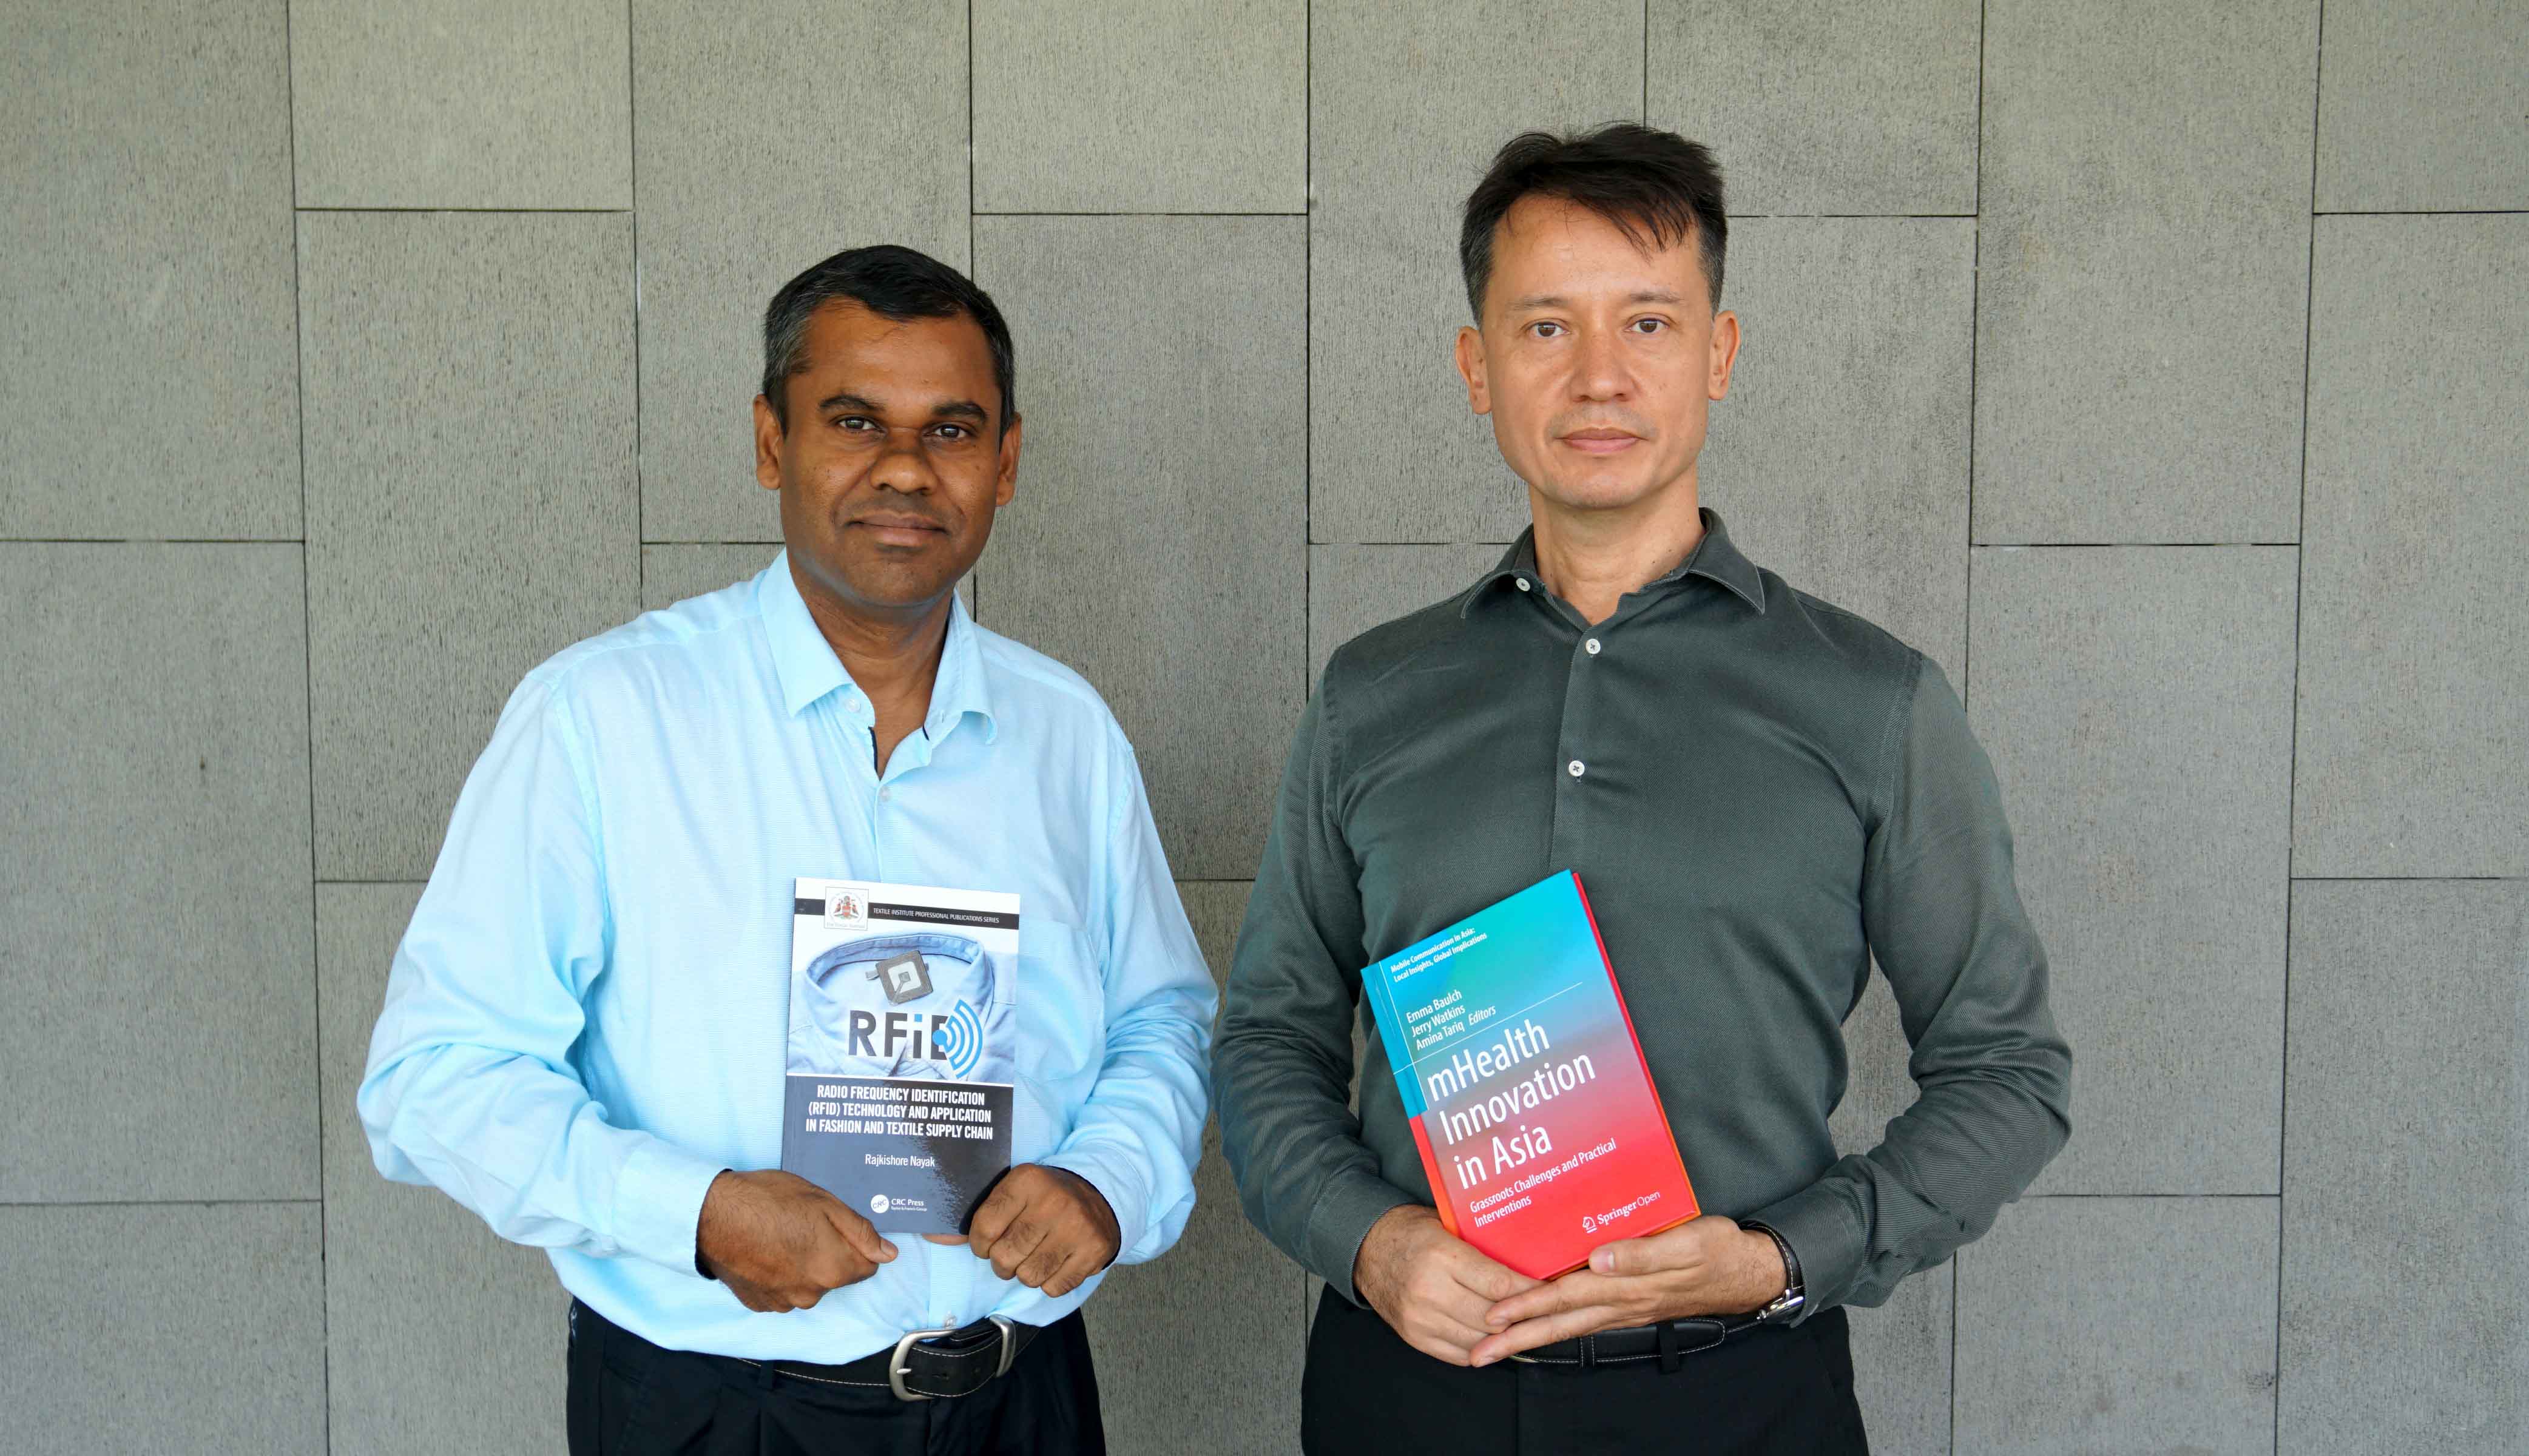 Tiến sĩ Rajkishore Nayak (giảng viên RMIT) và Phó giáo sư Jerry Watkins (Chủ nhiệm bộ môn Truyền thông) được tri ân vào Ngày Sách Thế giới nhờ những nghiên cứu của hai ông.